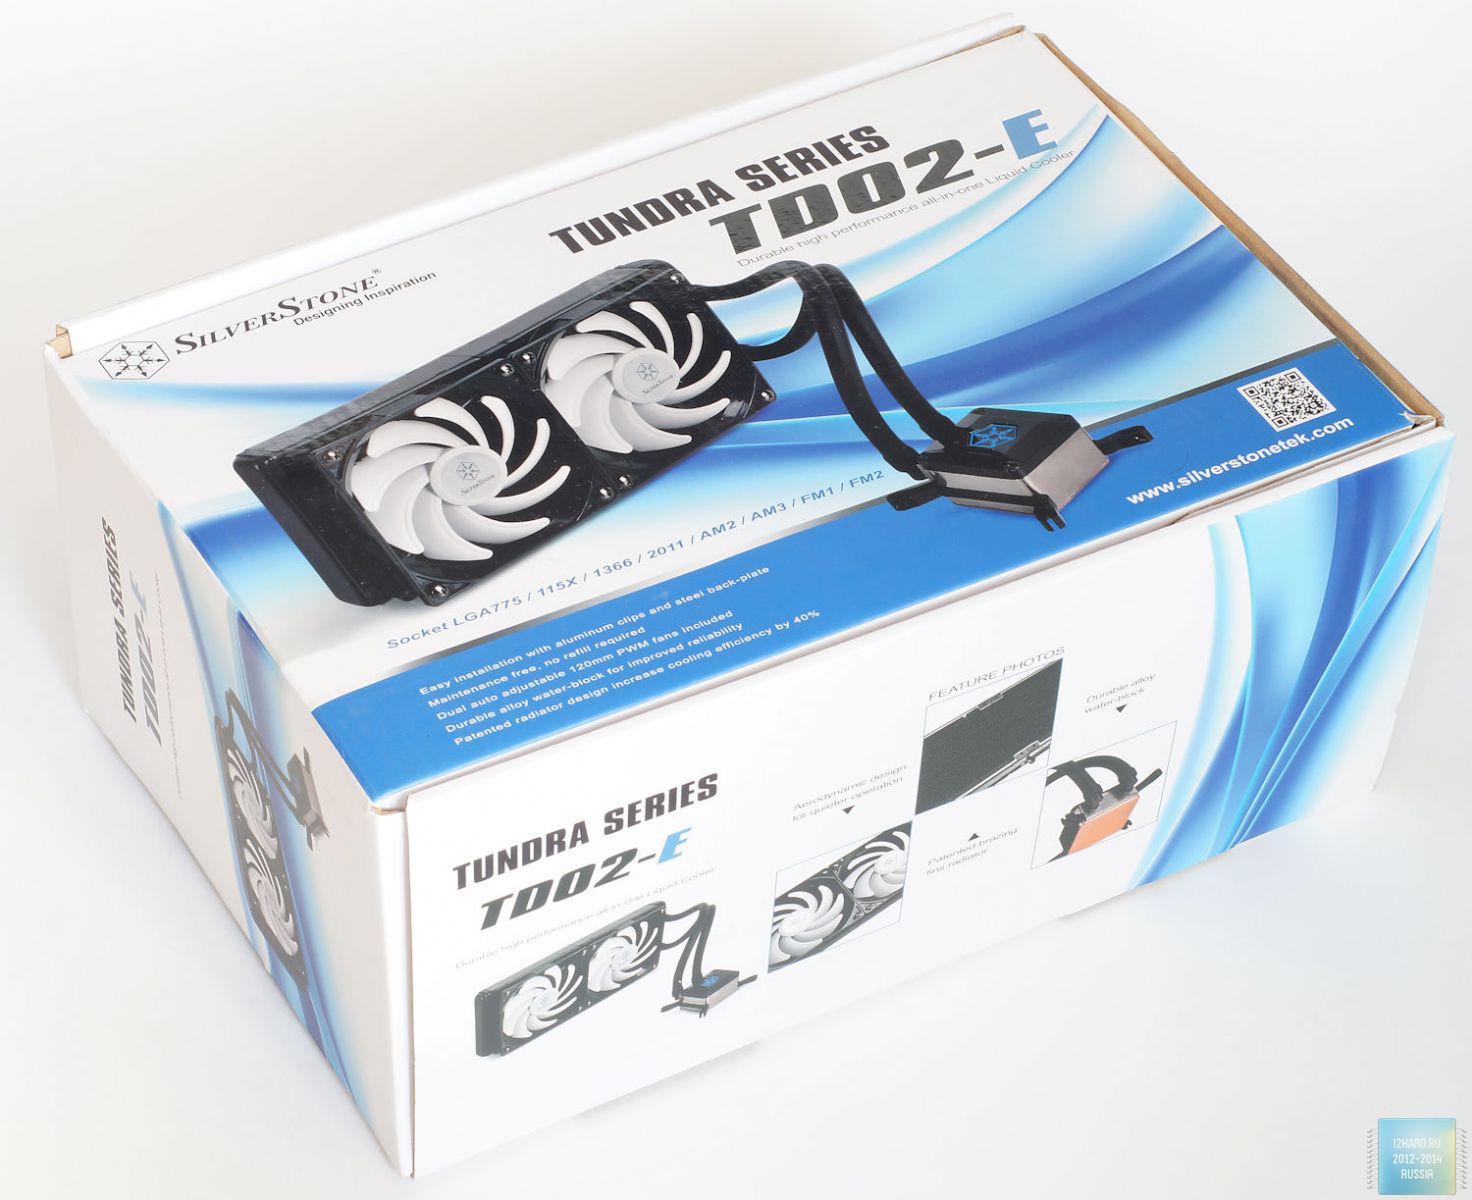 Система жидкостного охлаждения SilverStone TD02-E. Упаковка и комплектация